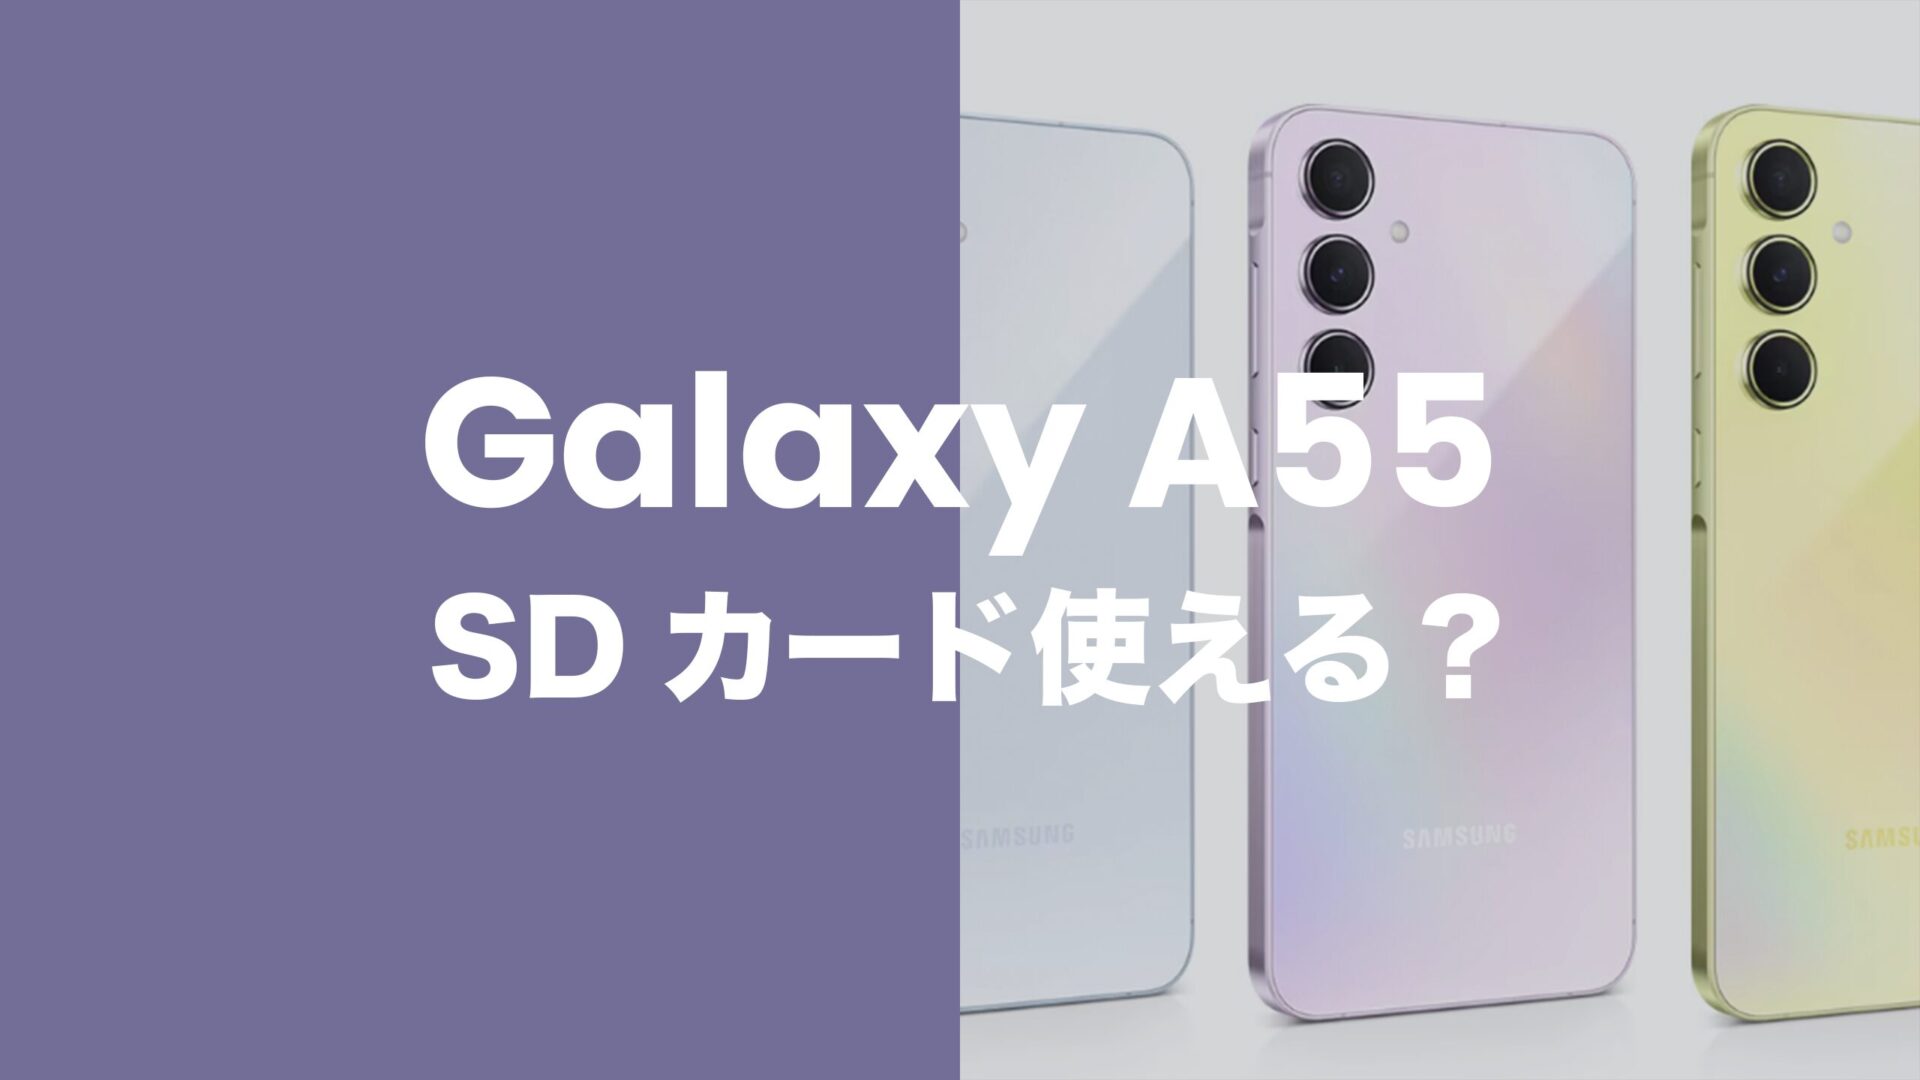 Galaxy(ギャラクシー)A55 5GはMicroSDカードスロットあり。1TBまで使える。のサムネイル画像